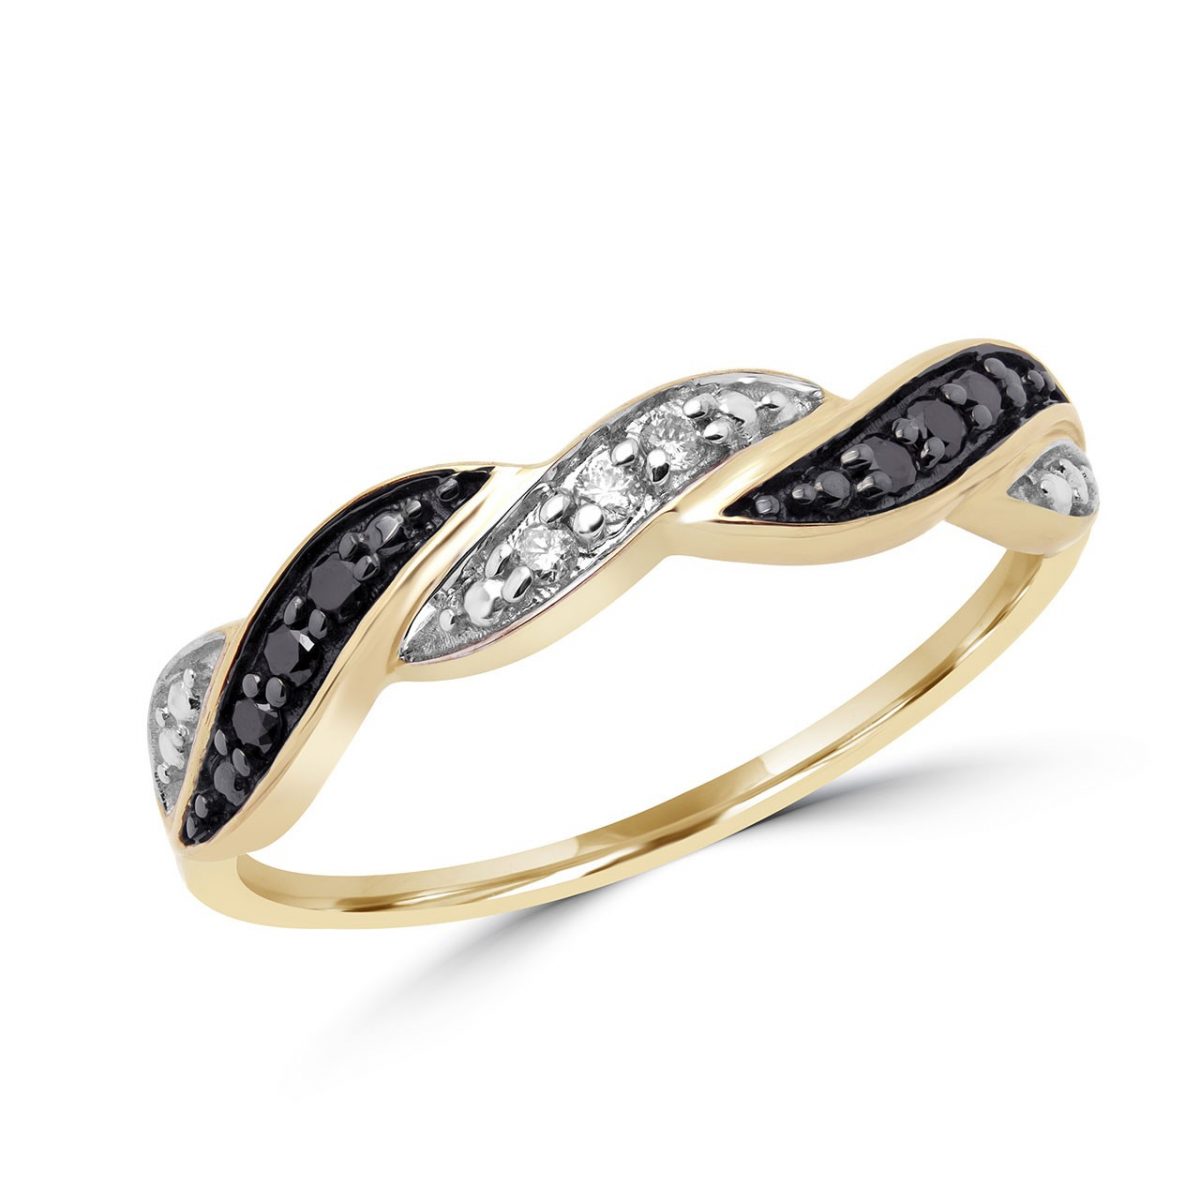 Feminine black and white diamond ring 10k yellow gold